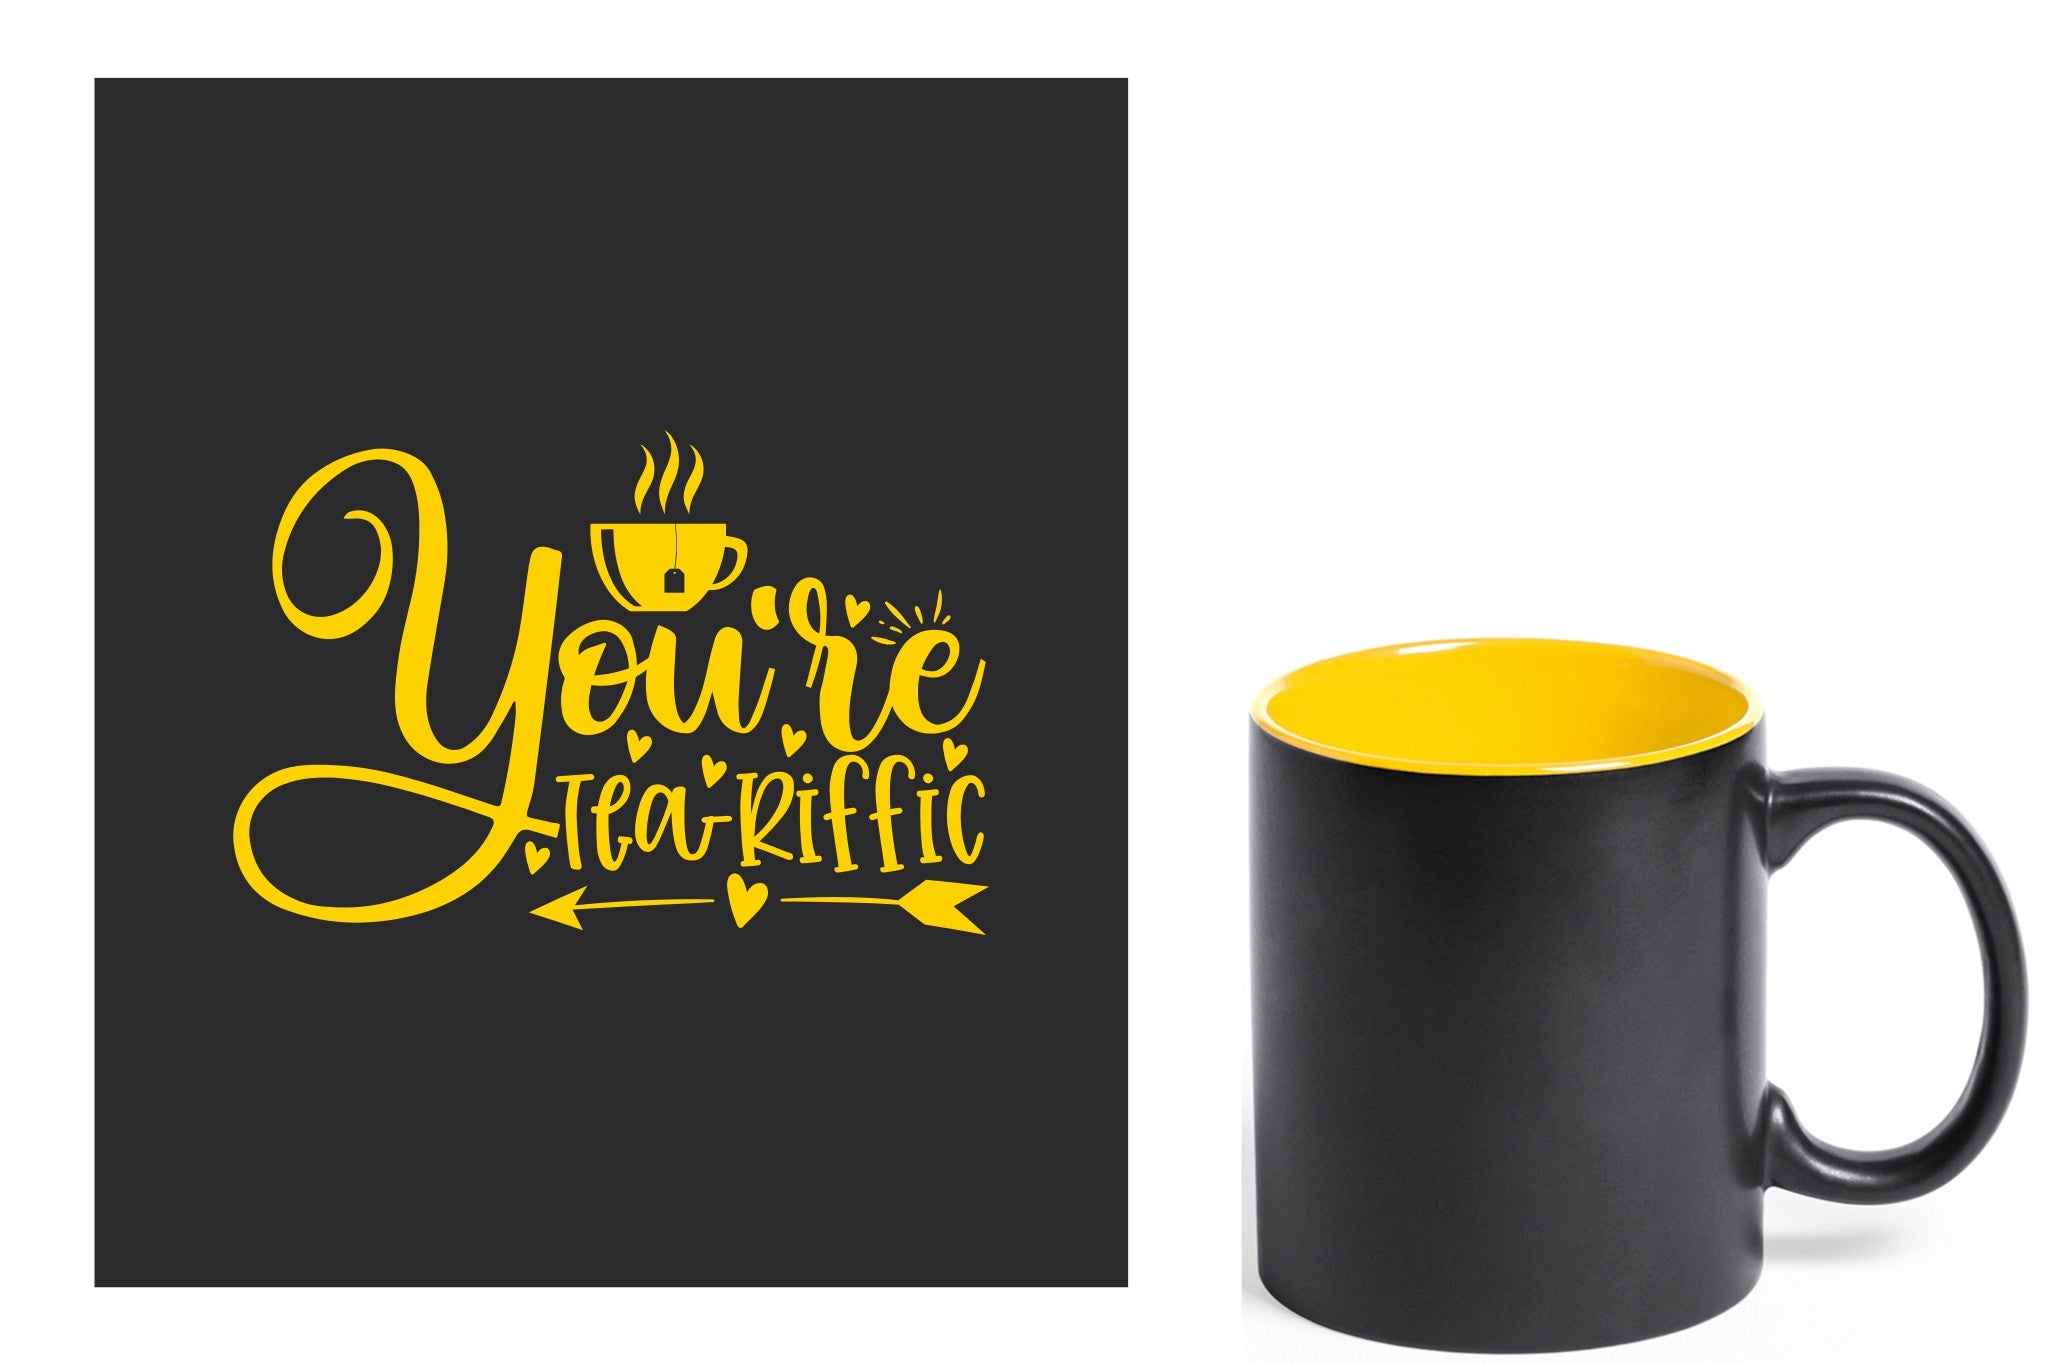 zwarte keramische mok met gele gravure  'You're teariffic'.